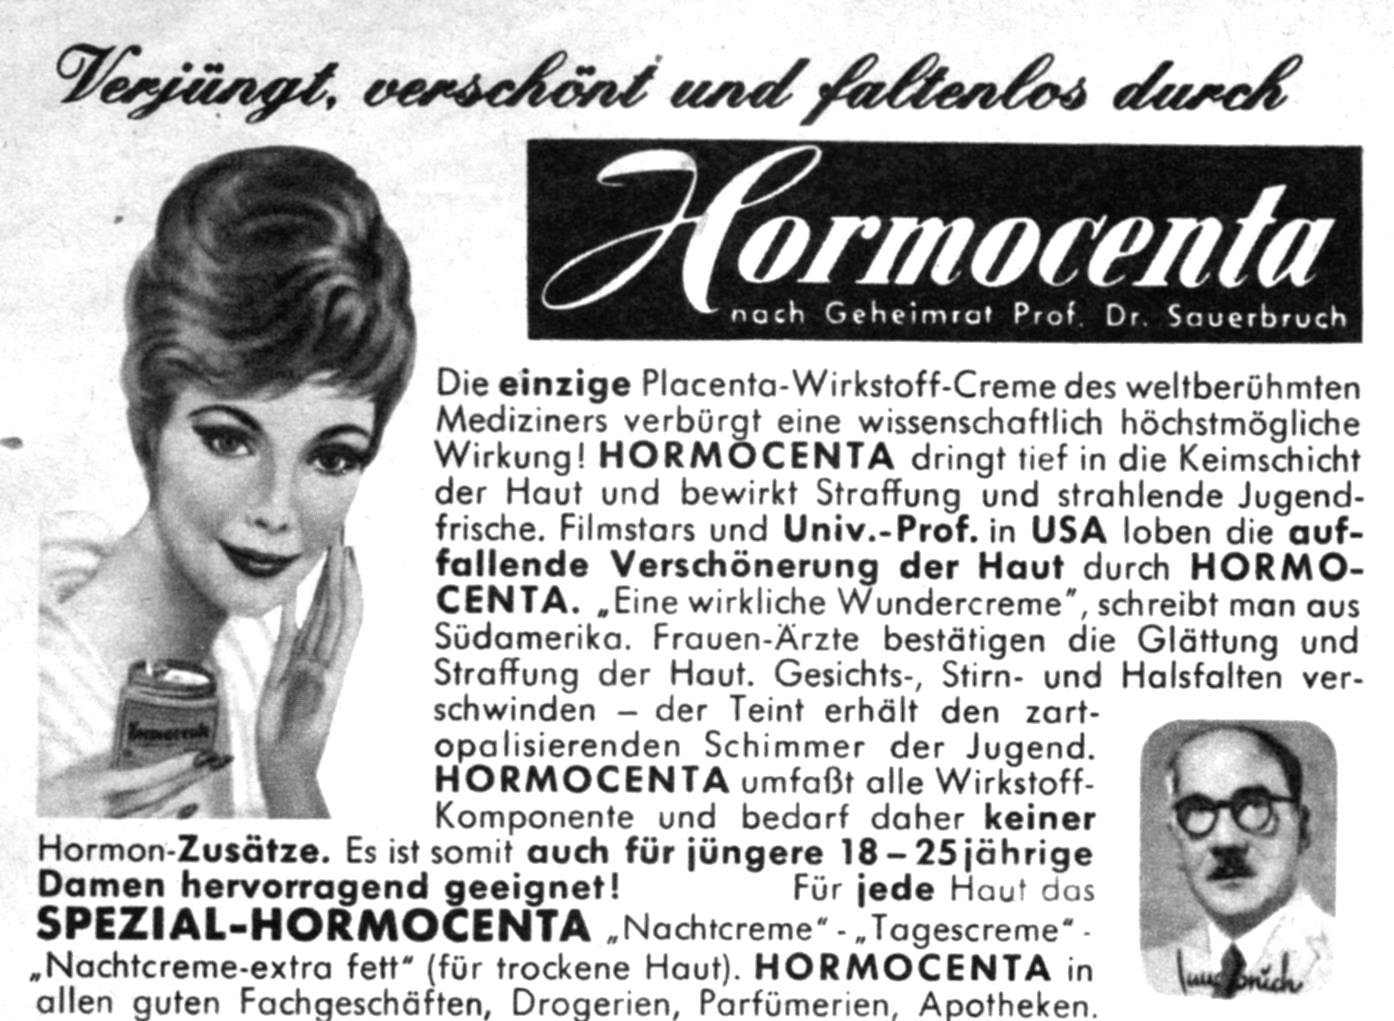 Hormocenta 1964 071.jpg